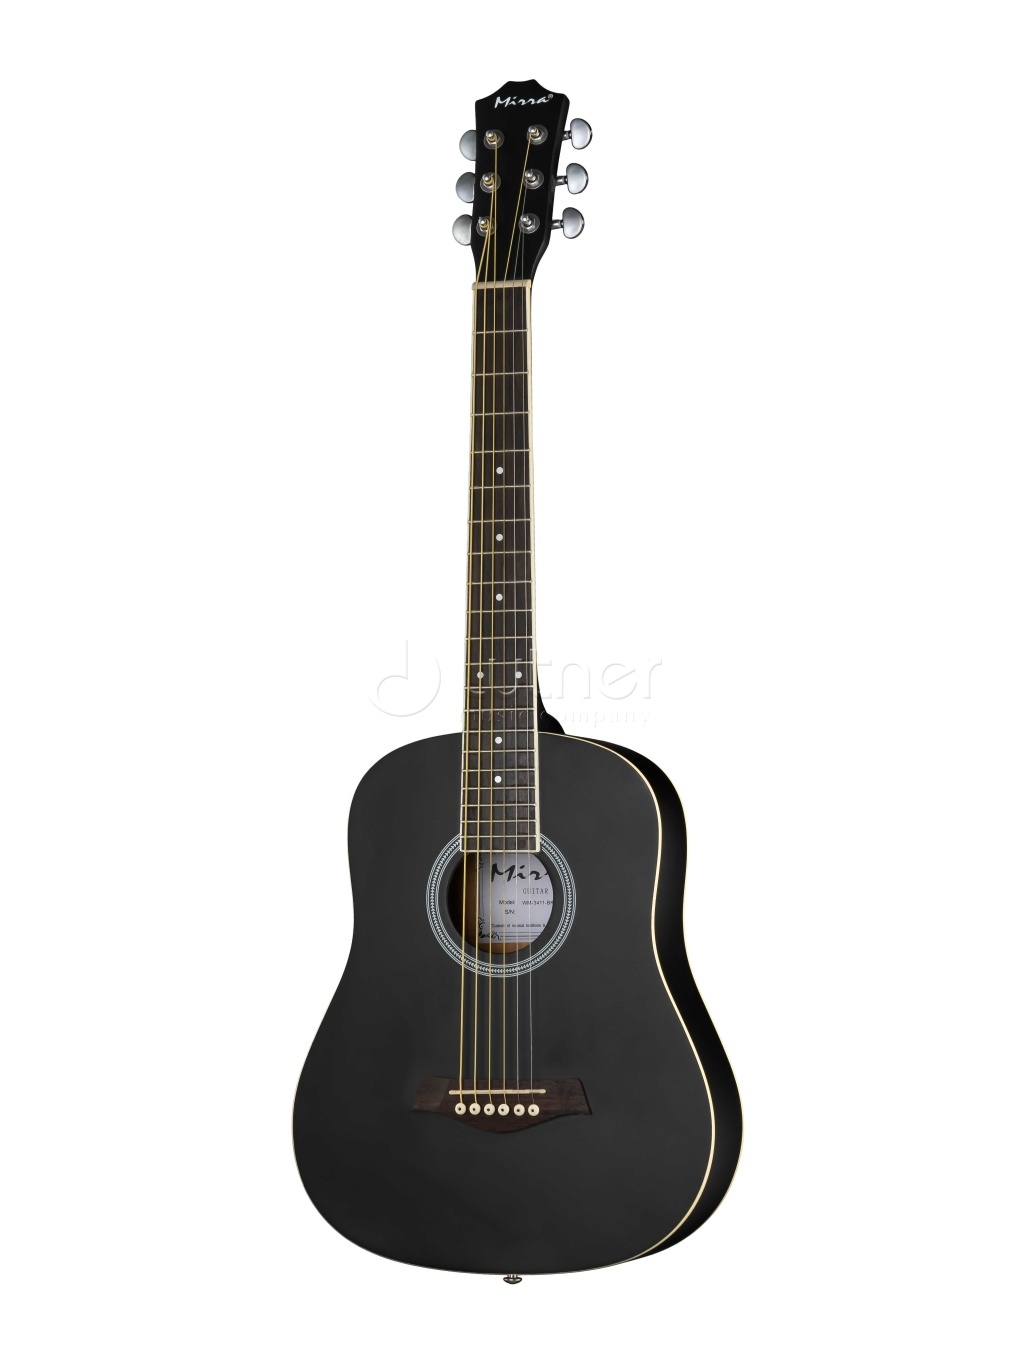 акустические гитары caraya f601 bk Акустические гитары Mirra WM-3411-BK 34